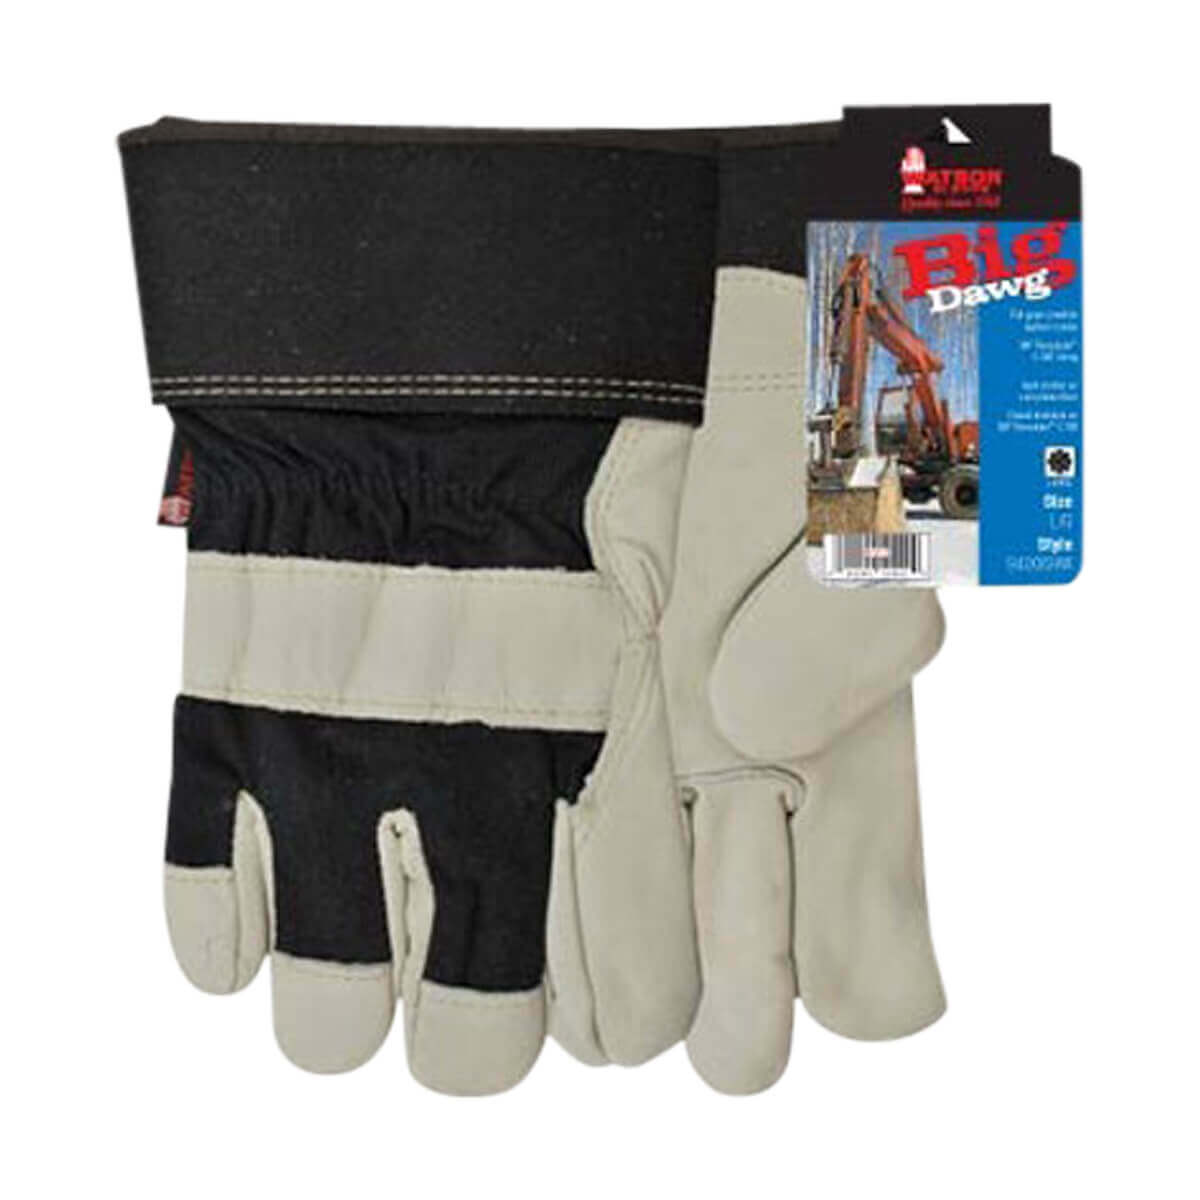 Watson 94006HW Big Dawg Gloves